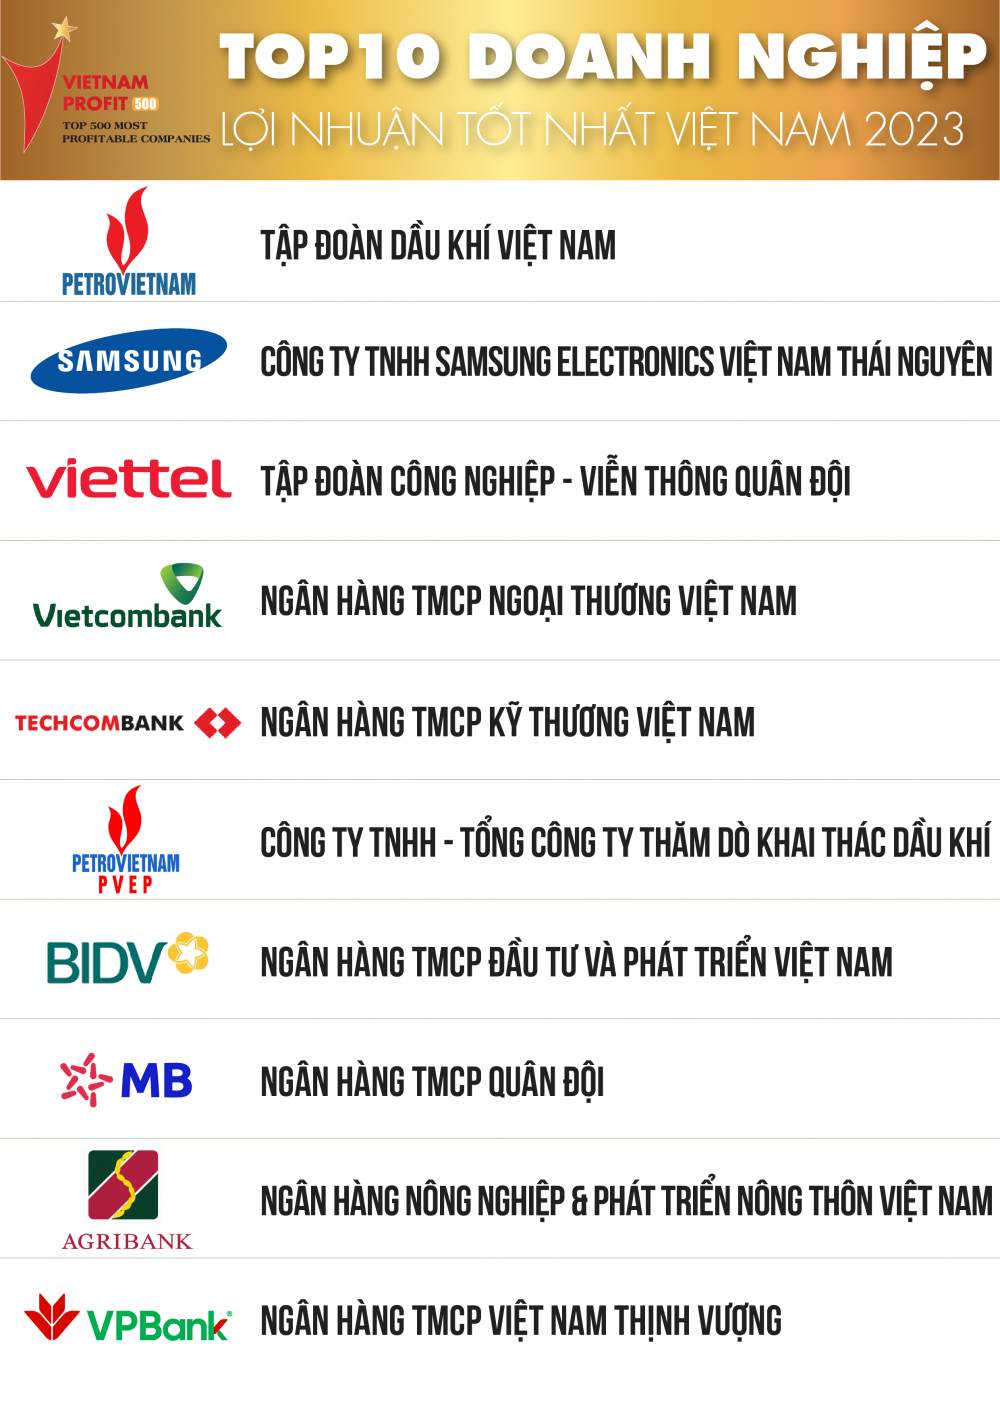 Petrovietnam dẫn đầu Top 10 doanh nghiệp lợi nhuận tốt nhất Việt Nam năm 2023